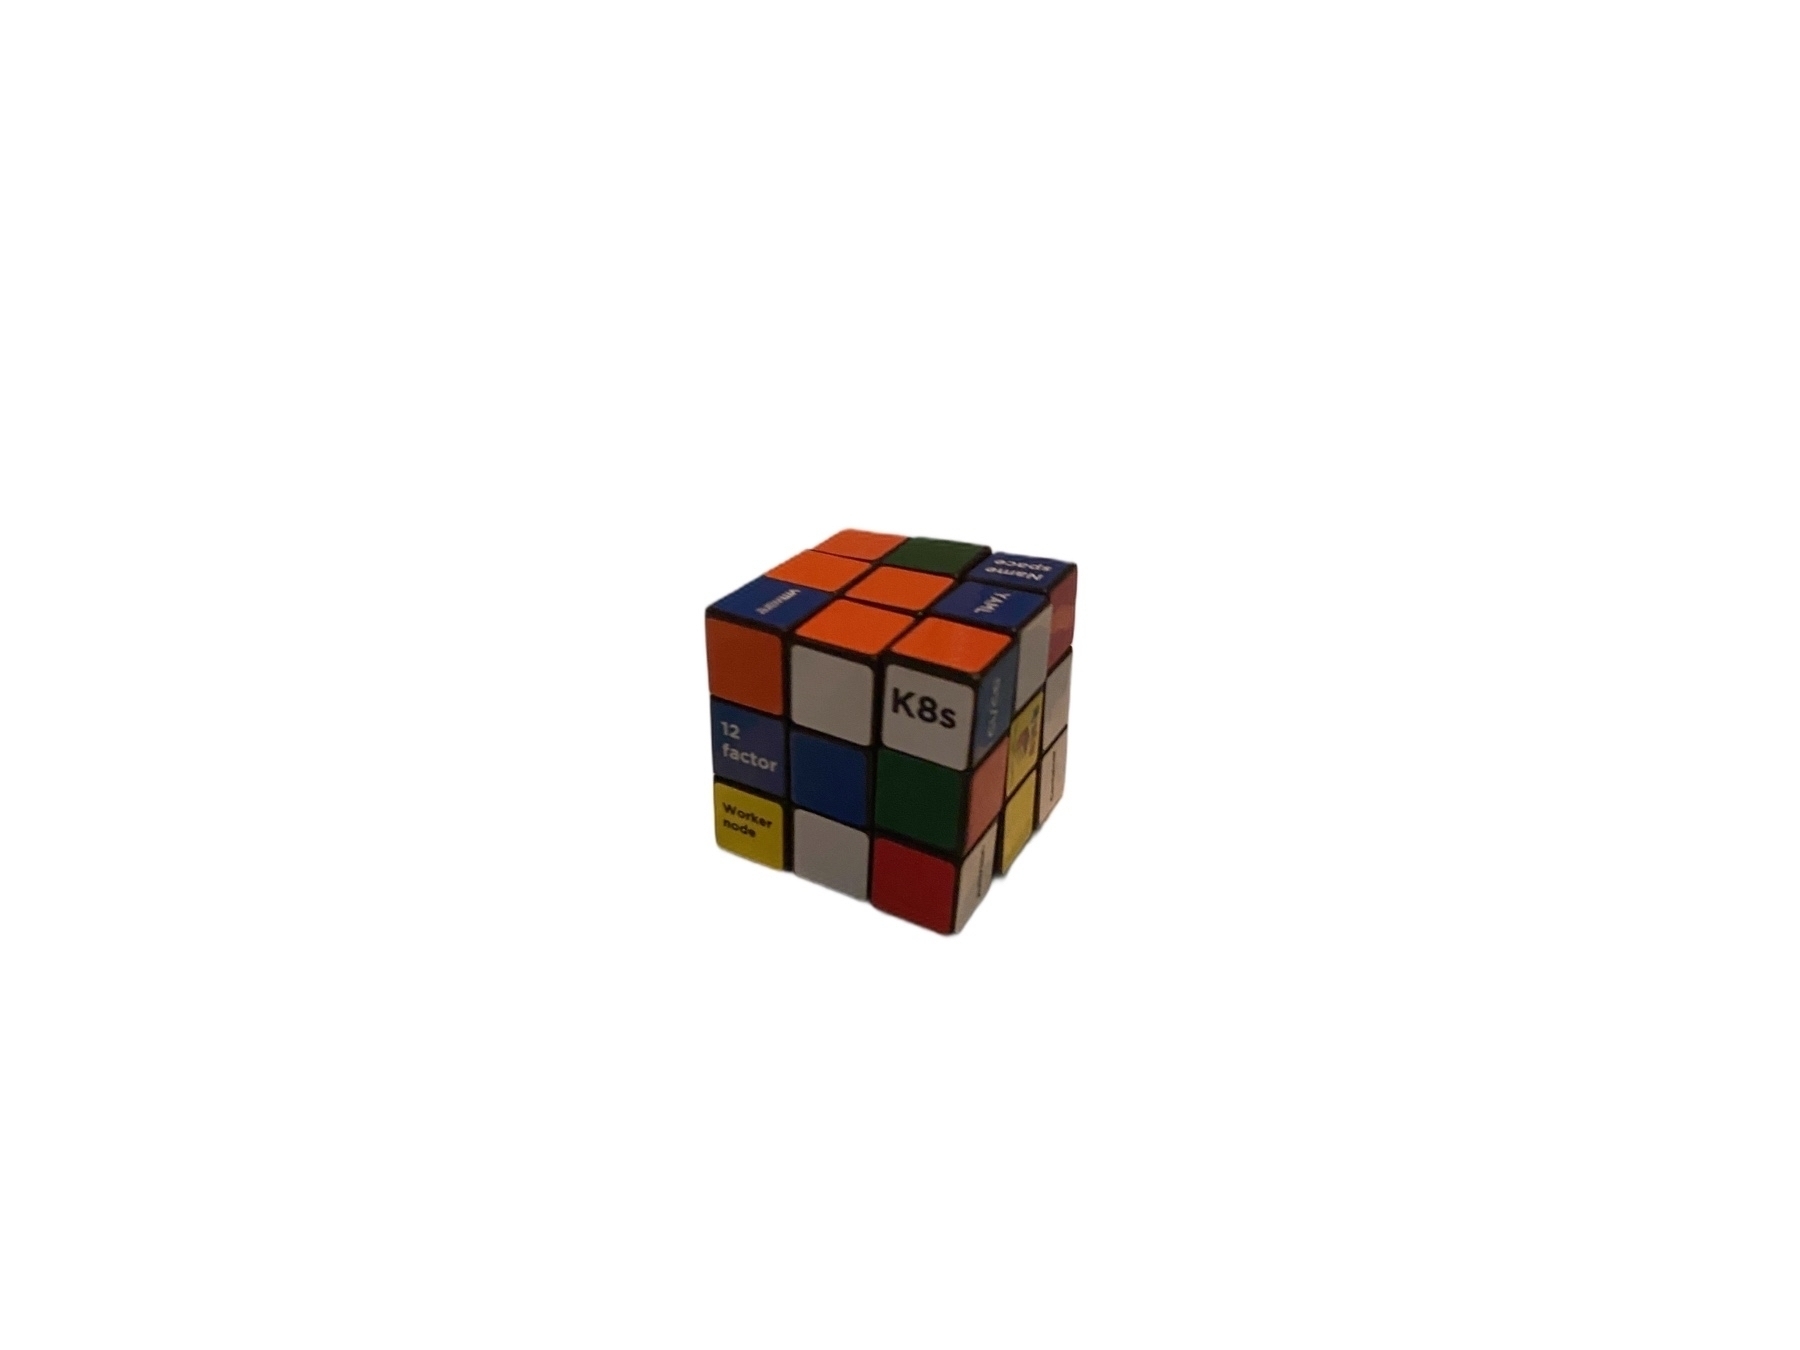 kubernetes Cube